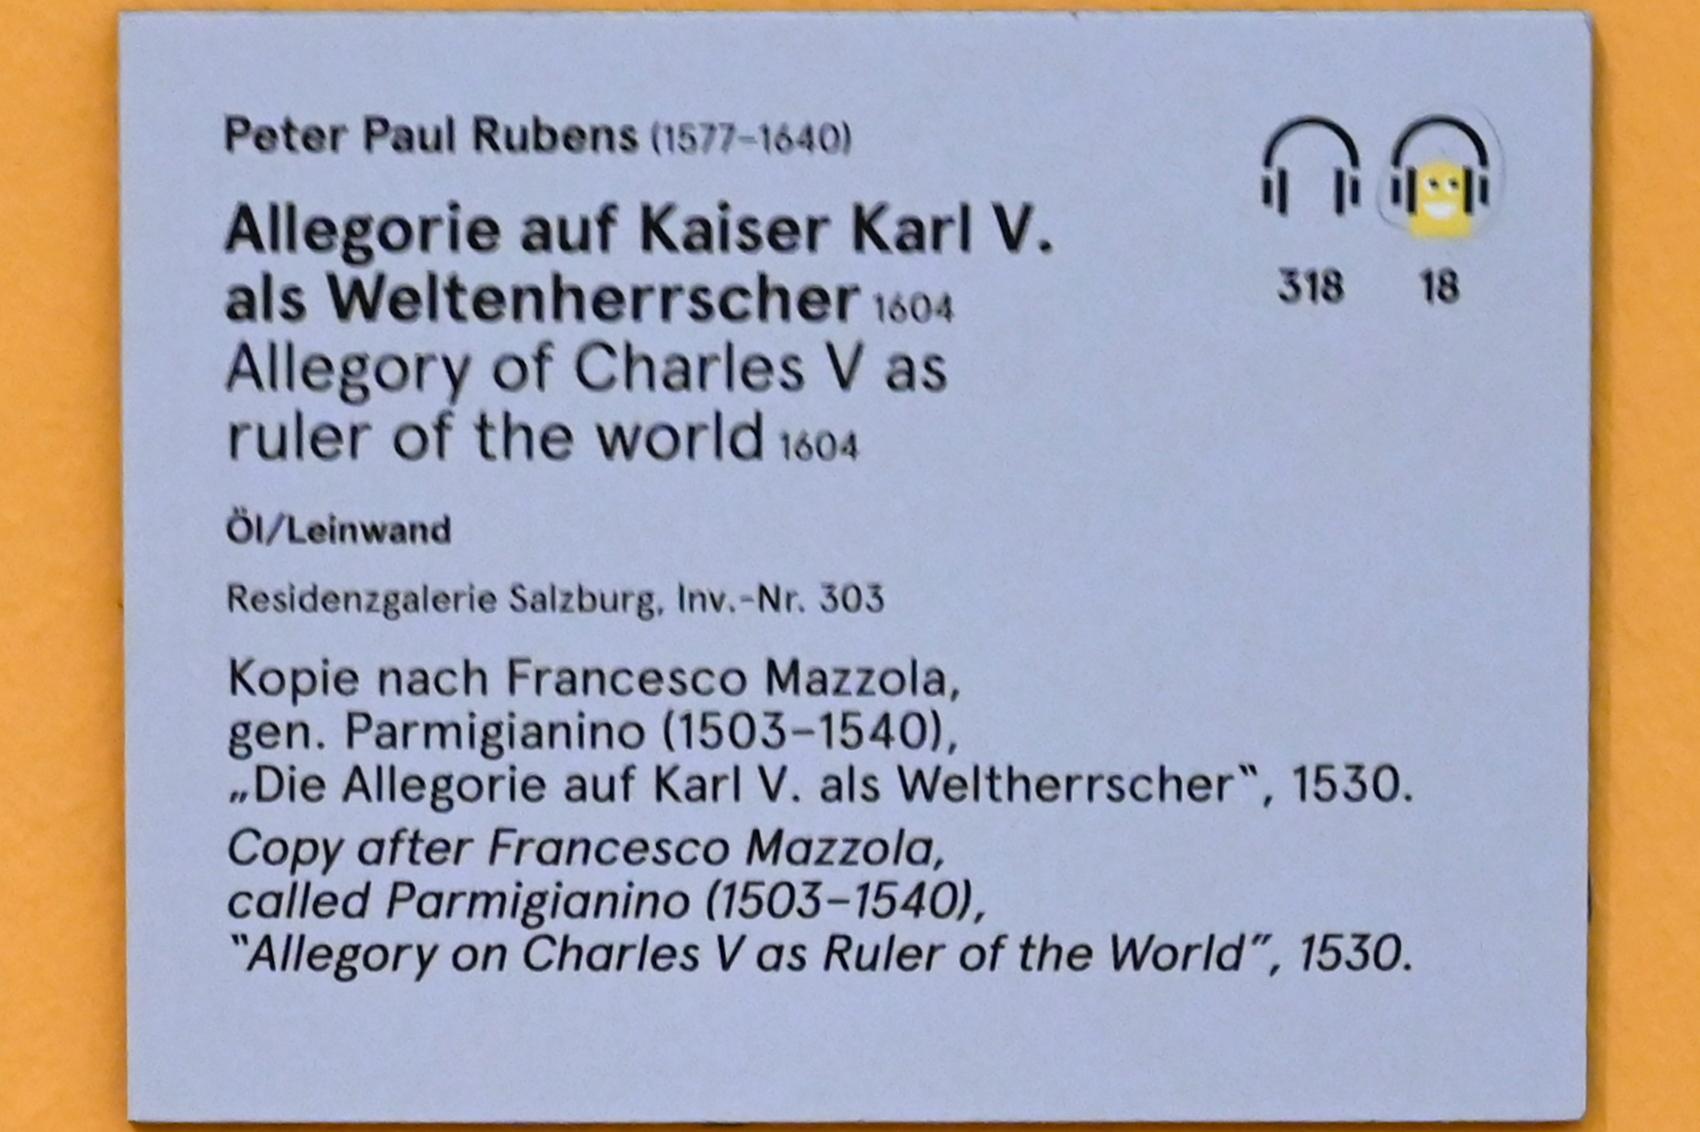 Peter Paul Rubens (1598–1640), Allegorie auf Kaiser Karl V. als Weltenherrscher, Salzburg, Salzburger Residenz, Residenzgalerie, 1604, Bild 3/4